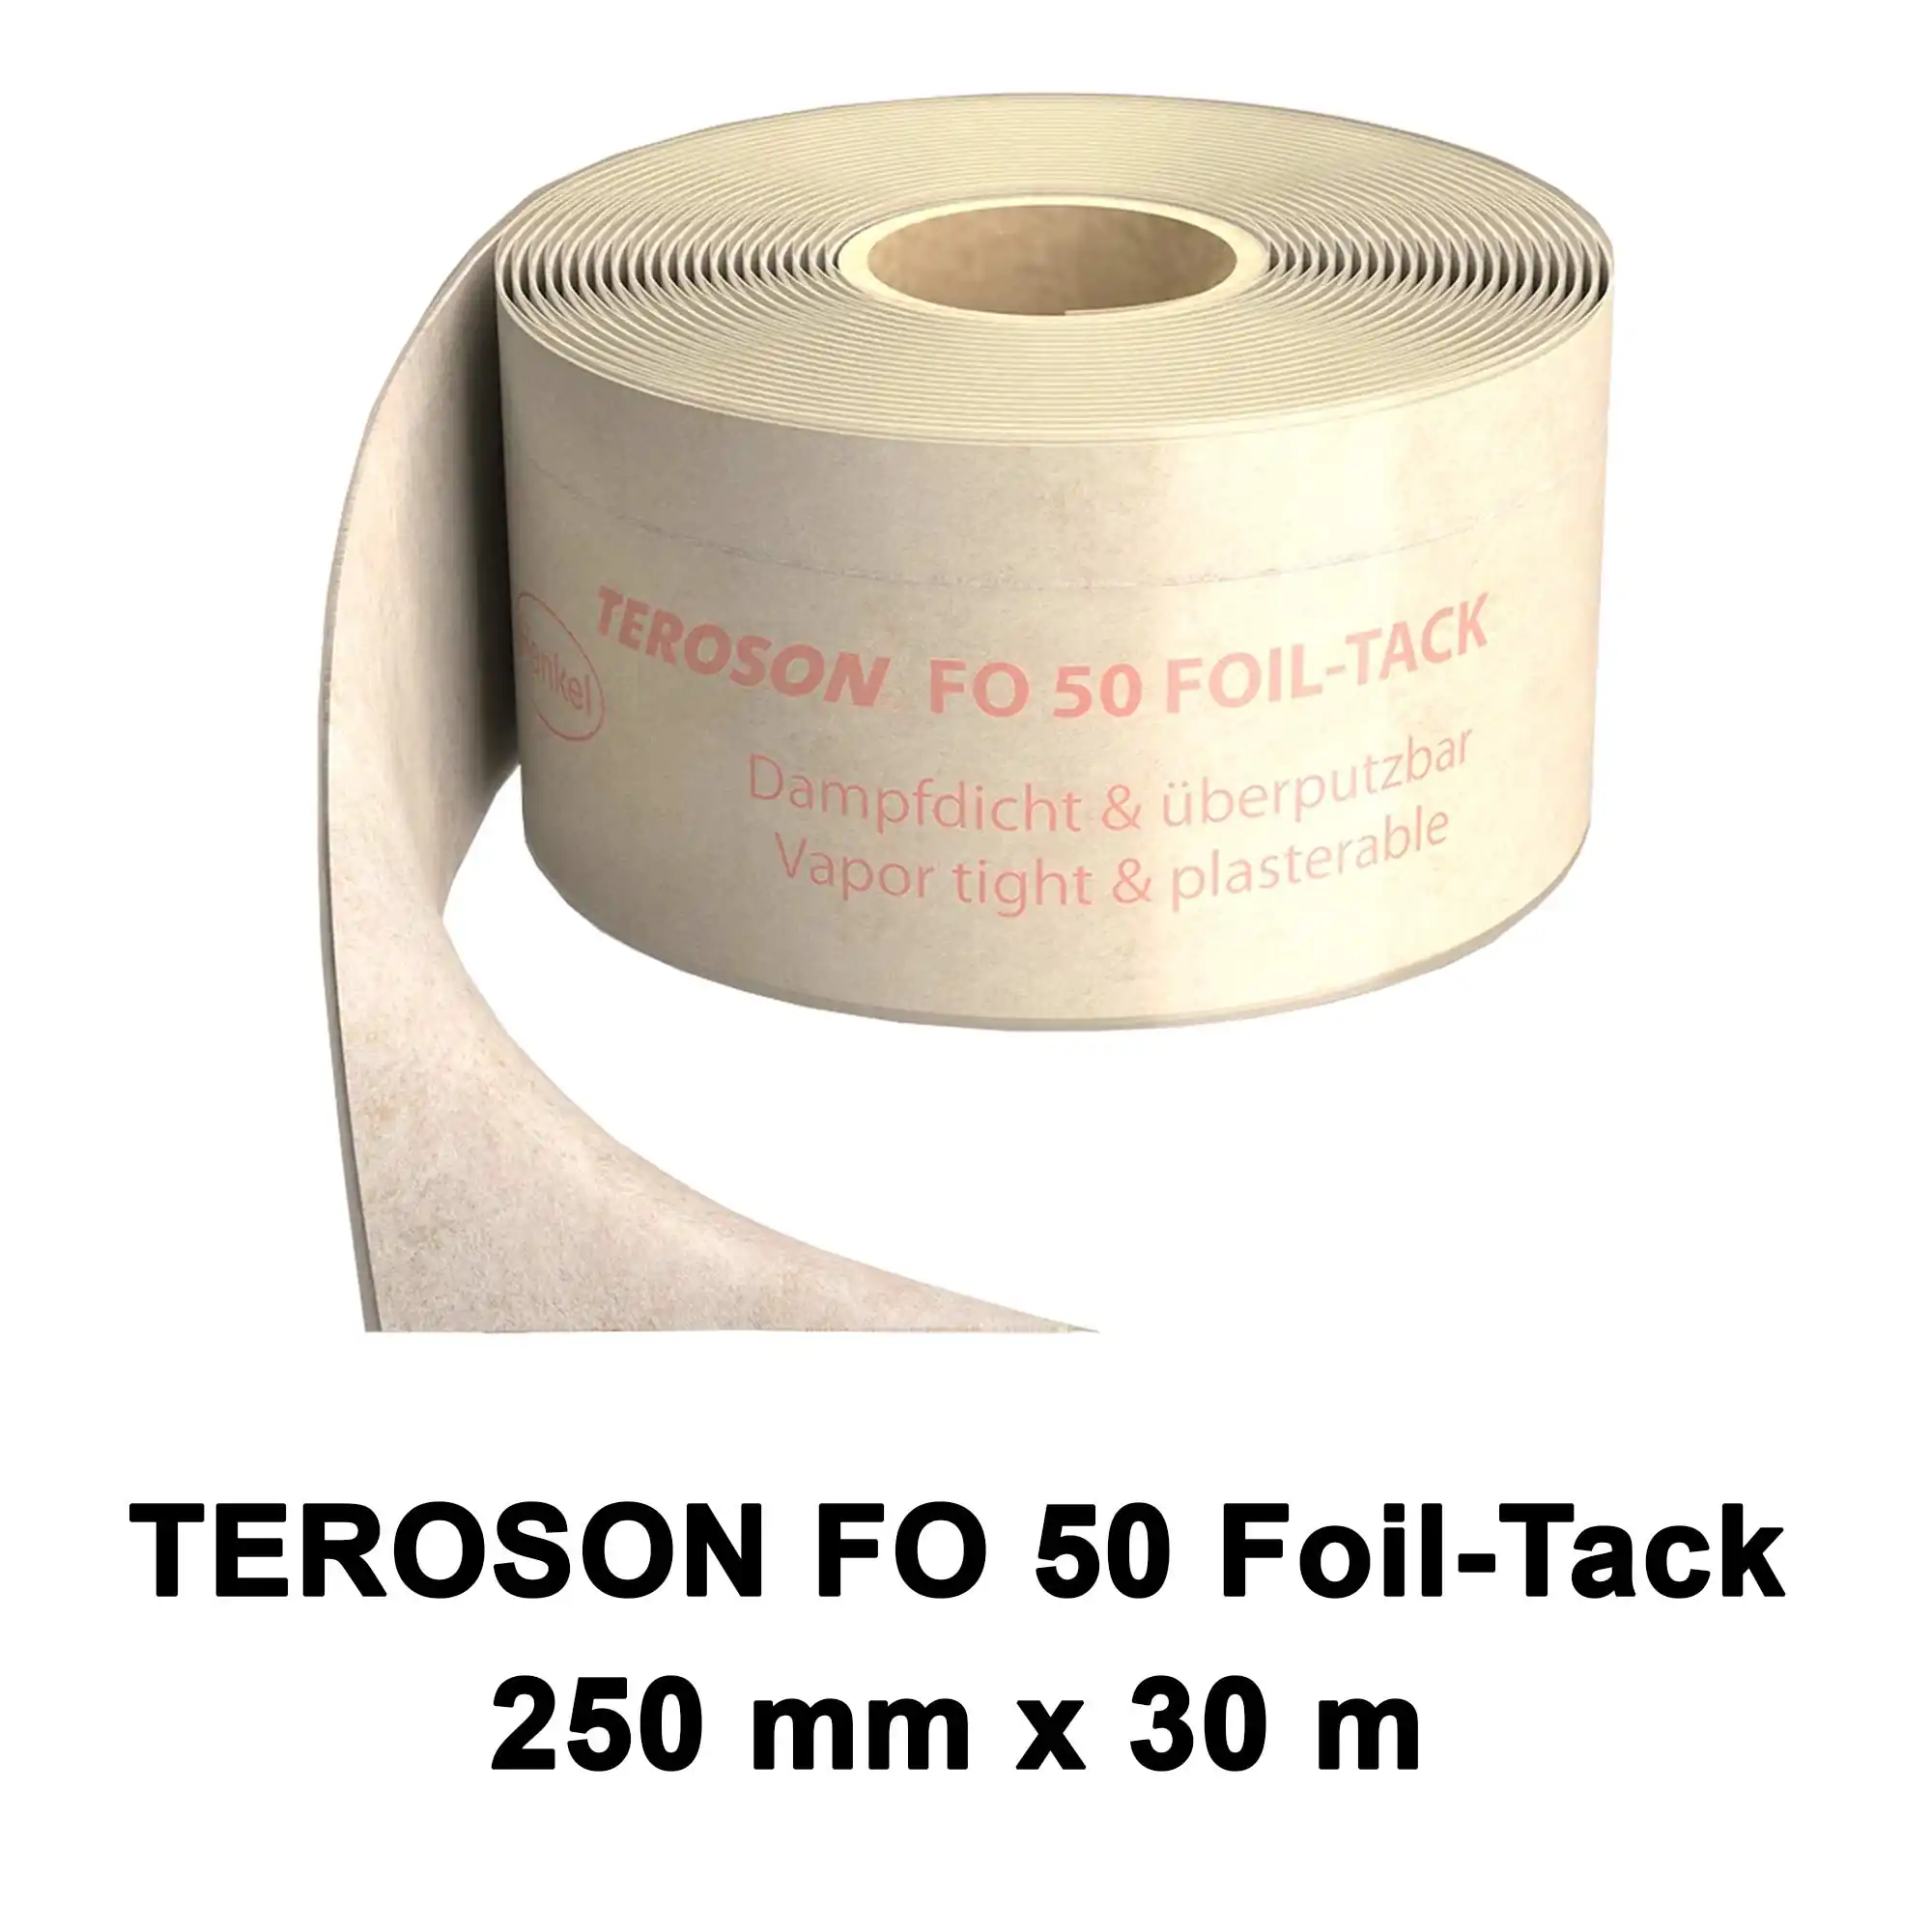 Dichtfolie TEROSON FO 50 FOIL-TACK 250mm x 30m